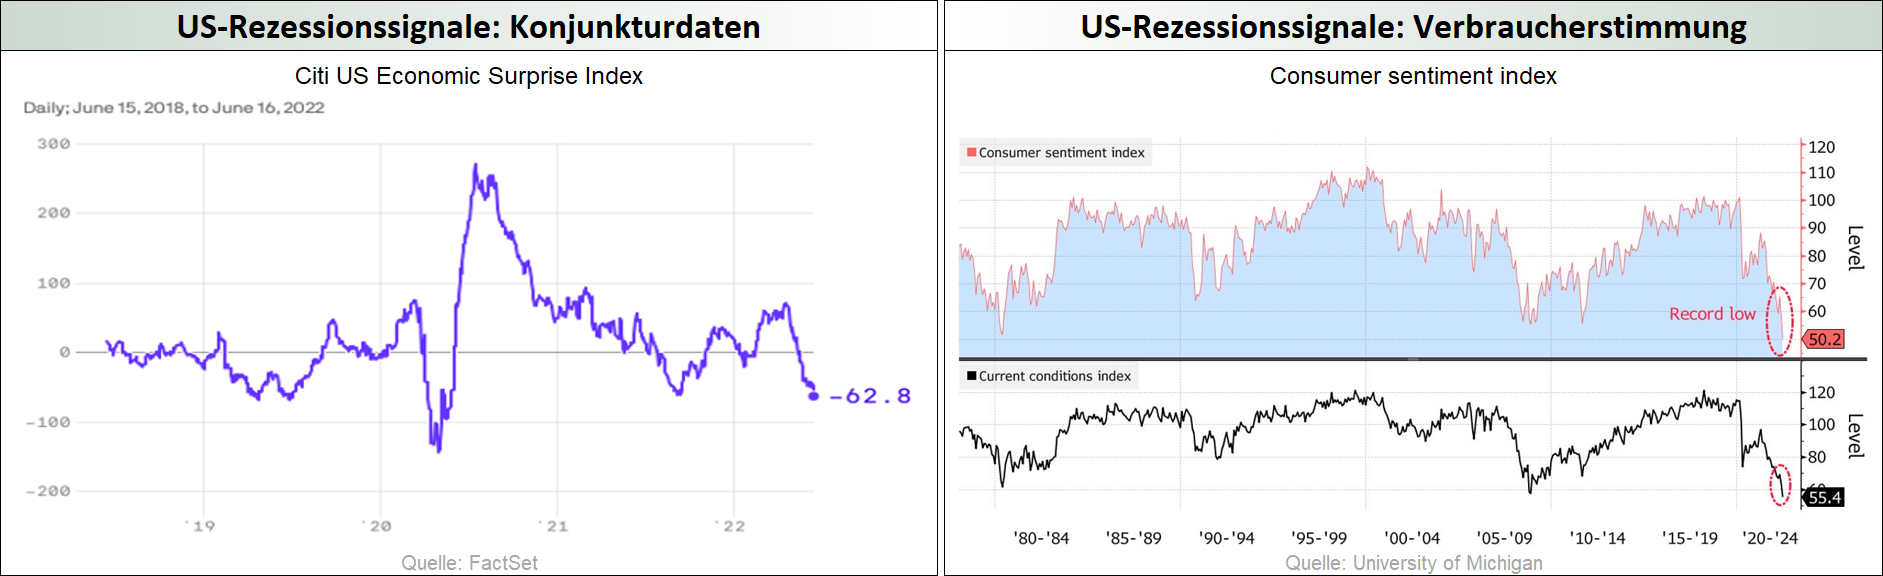 US-Rezessionssignale_Konjunkturdaten_Verbraucherstimmung